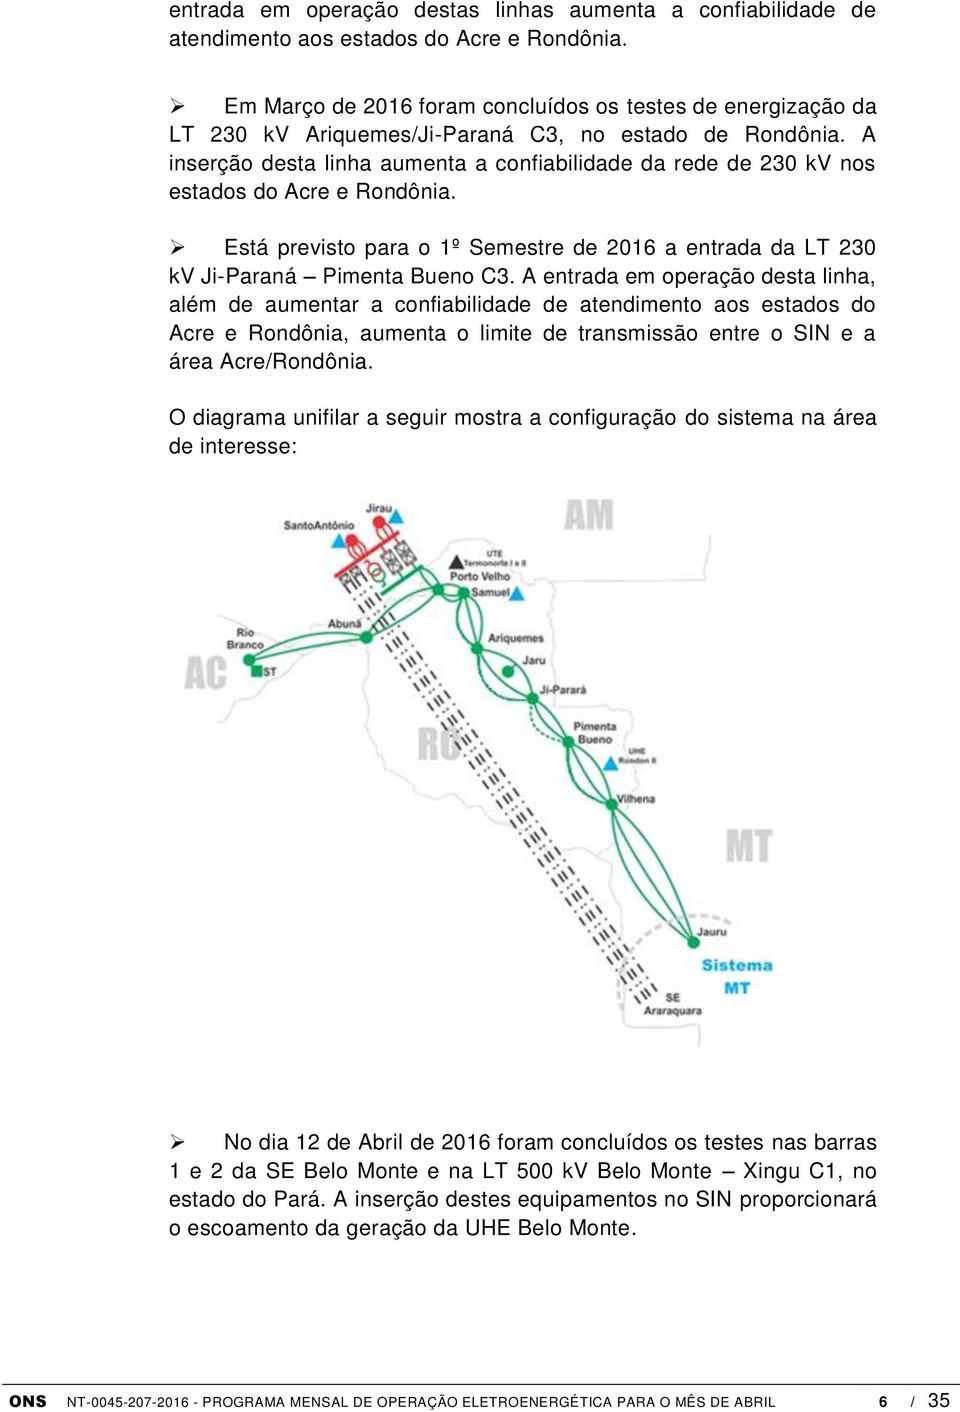 A inserção desta linha aumenta a confiabilidade da rede de 230 kv nos estados do Acre e Rondônia. Está previsto para o 1º Semestre de 2016 a entrada da LT 230 kv Ji-Paraná Pimenta Bueno C3.